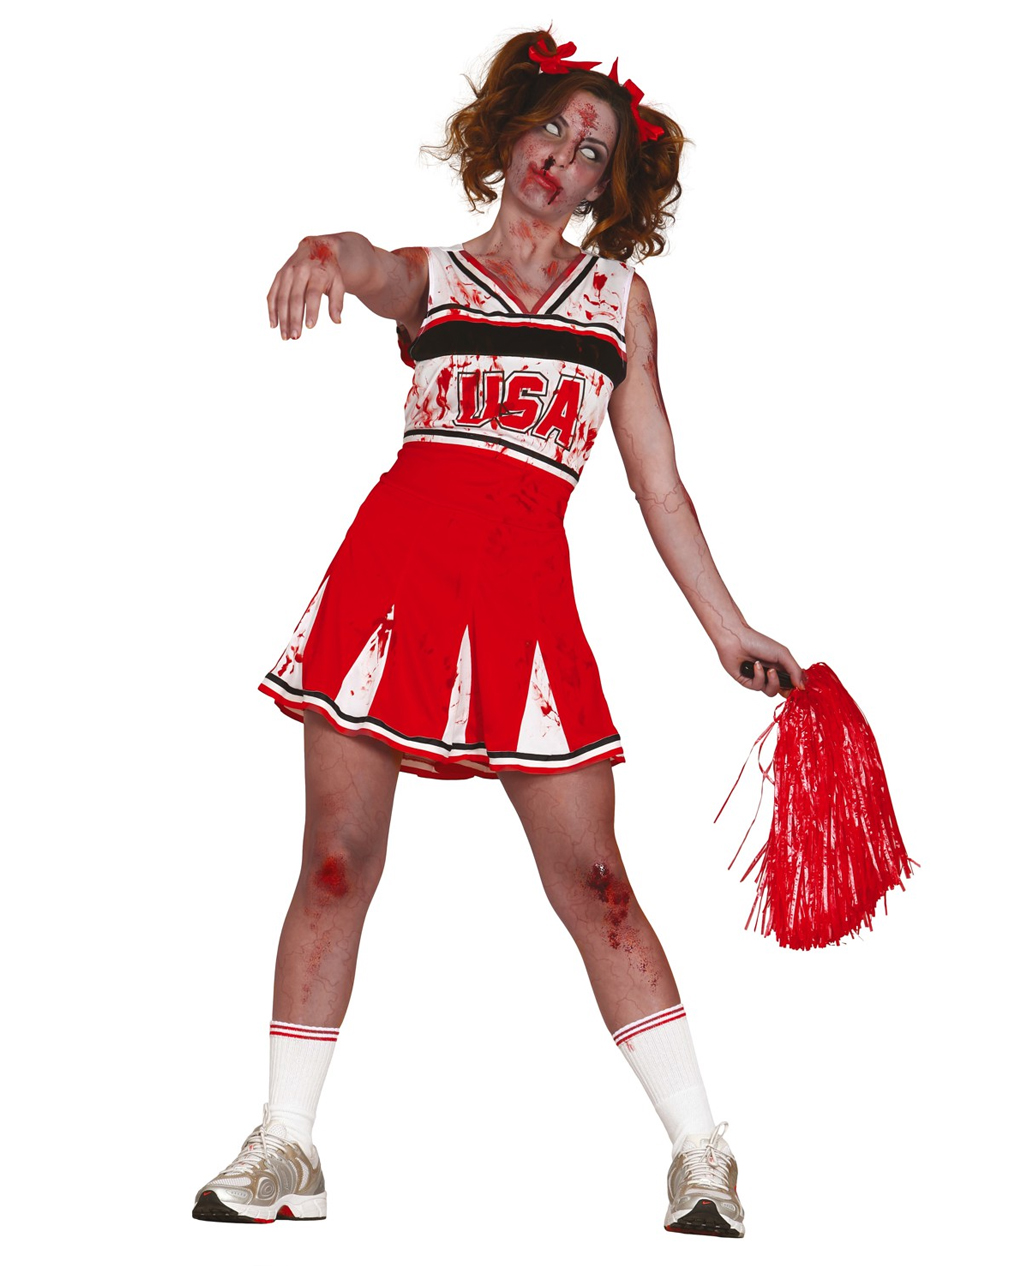 Cheerleader Zombie Costume | for Zombie Walks & Halloween | Horror-Shop.com